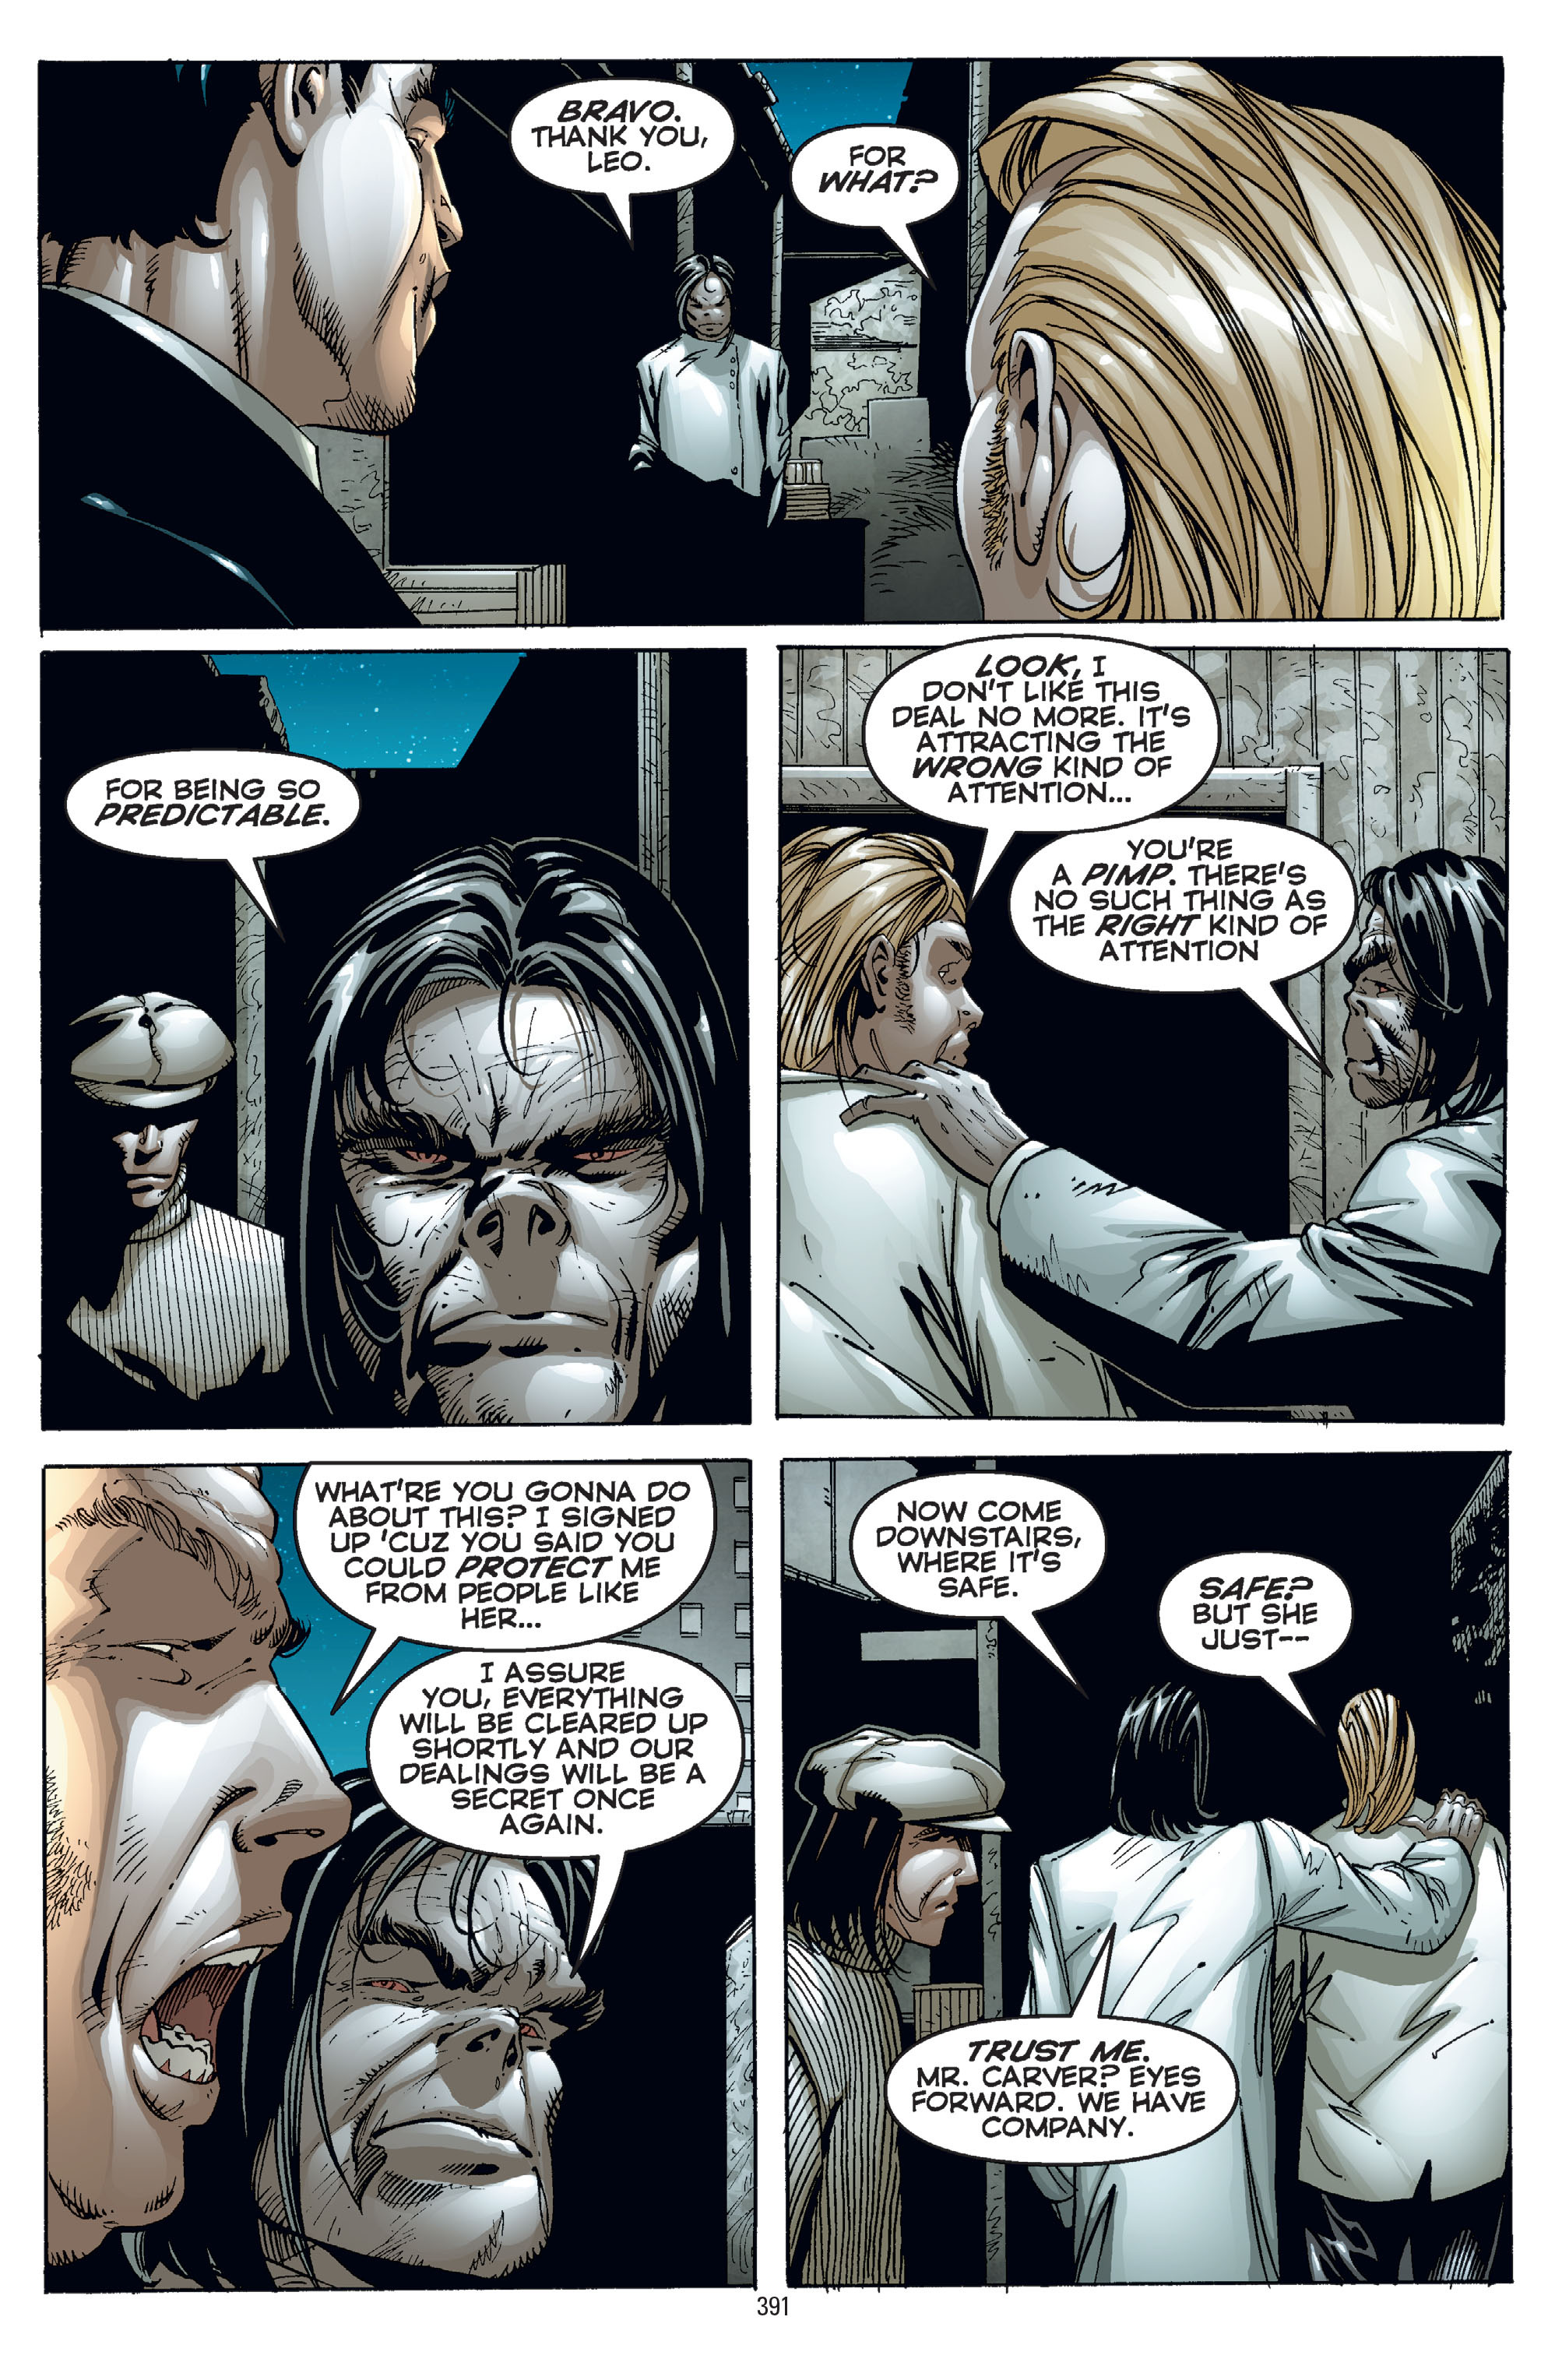 DC Comics/Dark Horse Comics: Justice League Full #1 - English 381